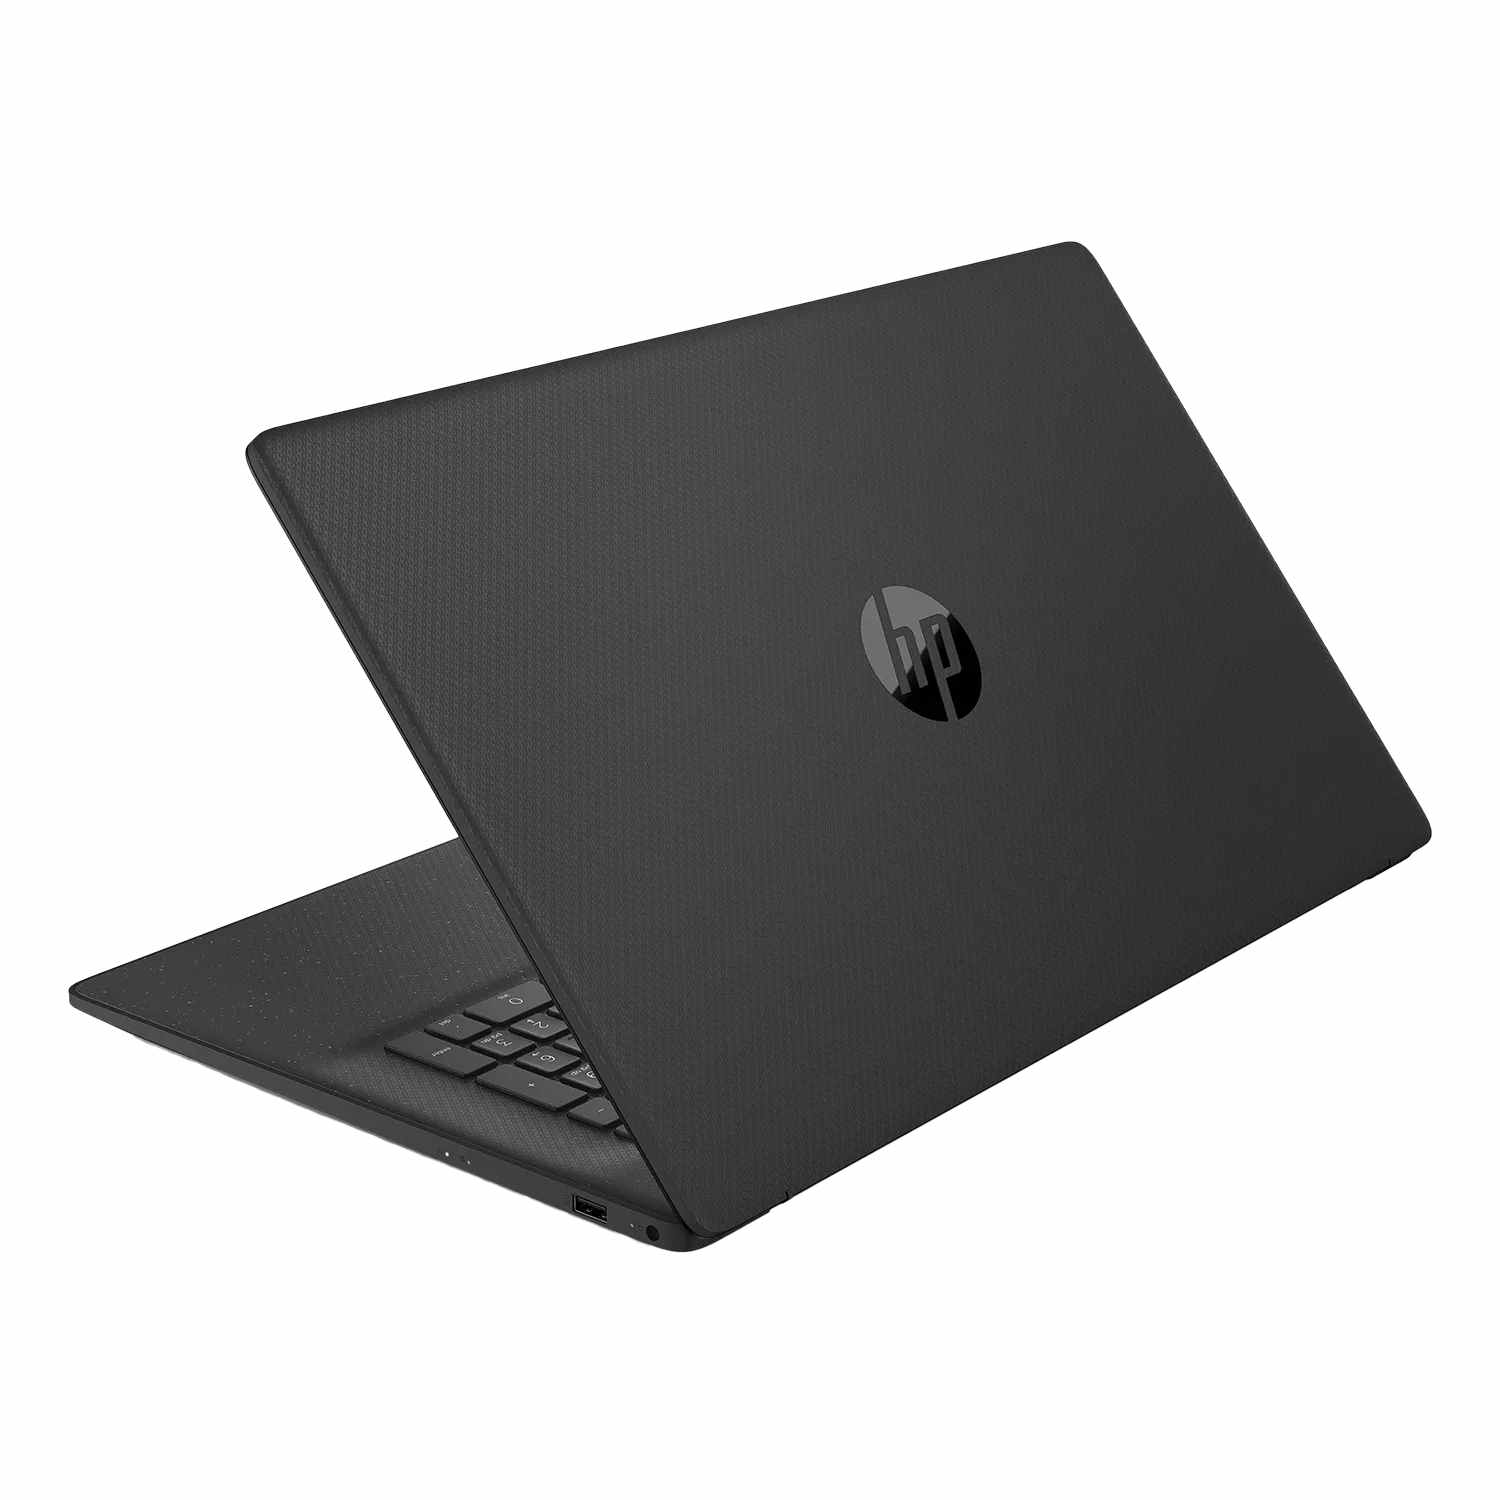 HP 17, fertig eingerichtet, Notebook Black GB 64 17,3 RAM, mit GB Display, Jet Intel®, Zoll SSD, 500